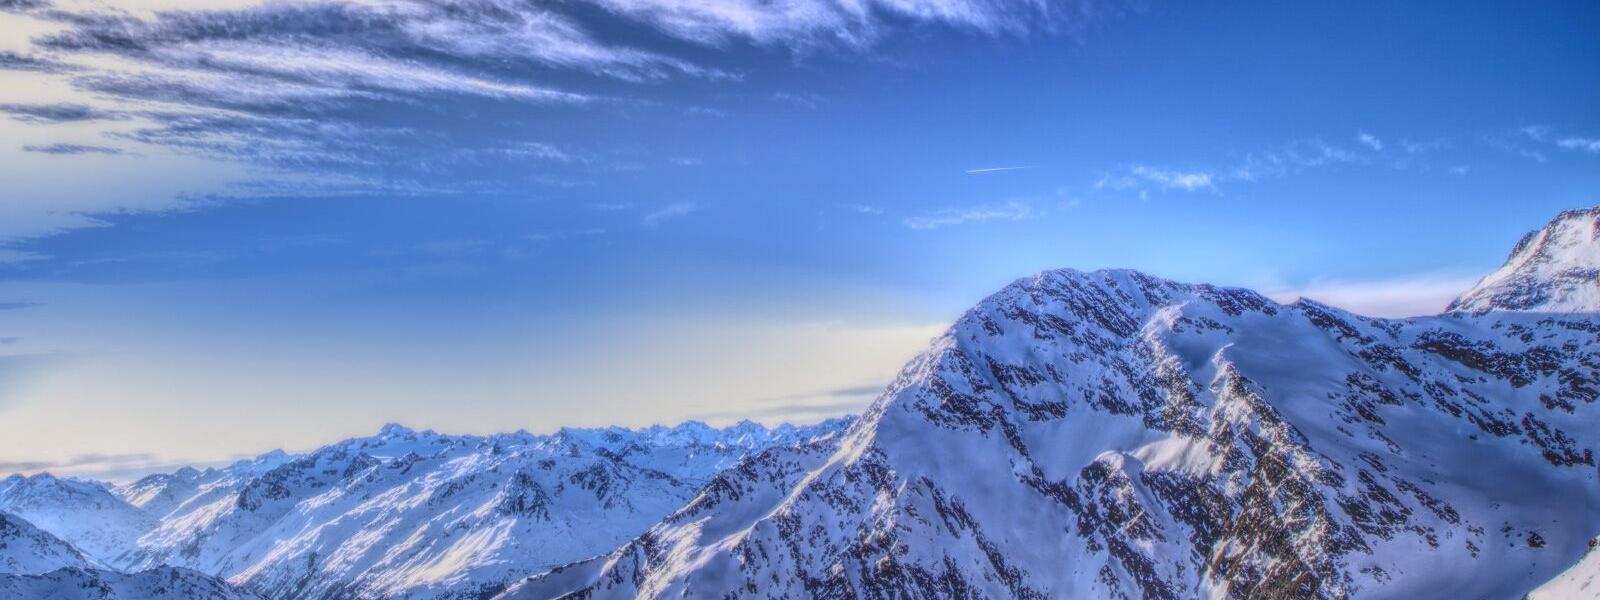 Stubaital, Winterlandschaft der Stubaier Alpen in Österreich